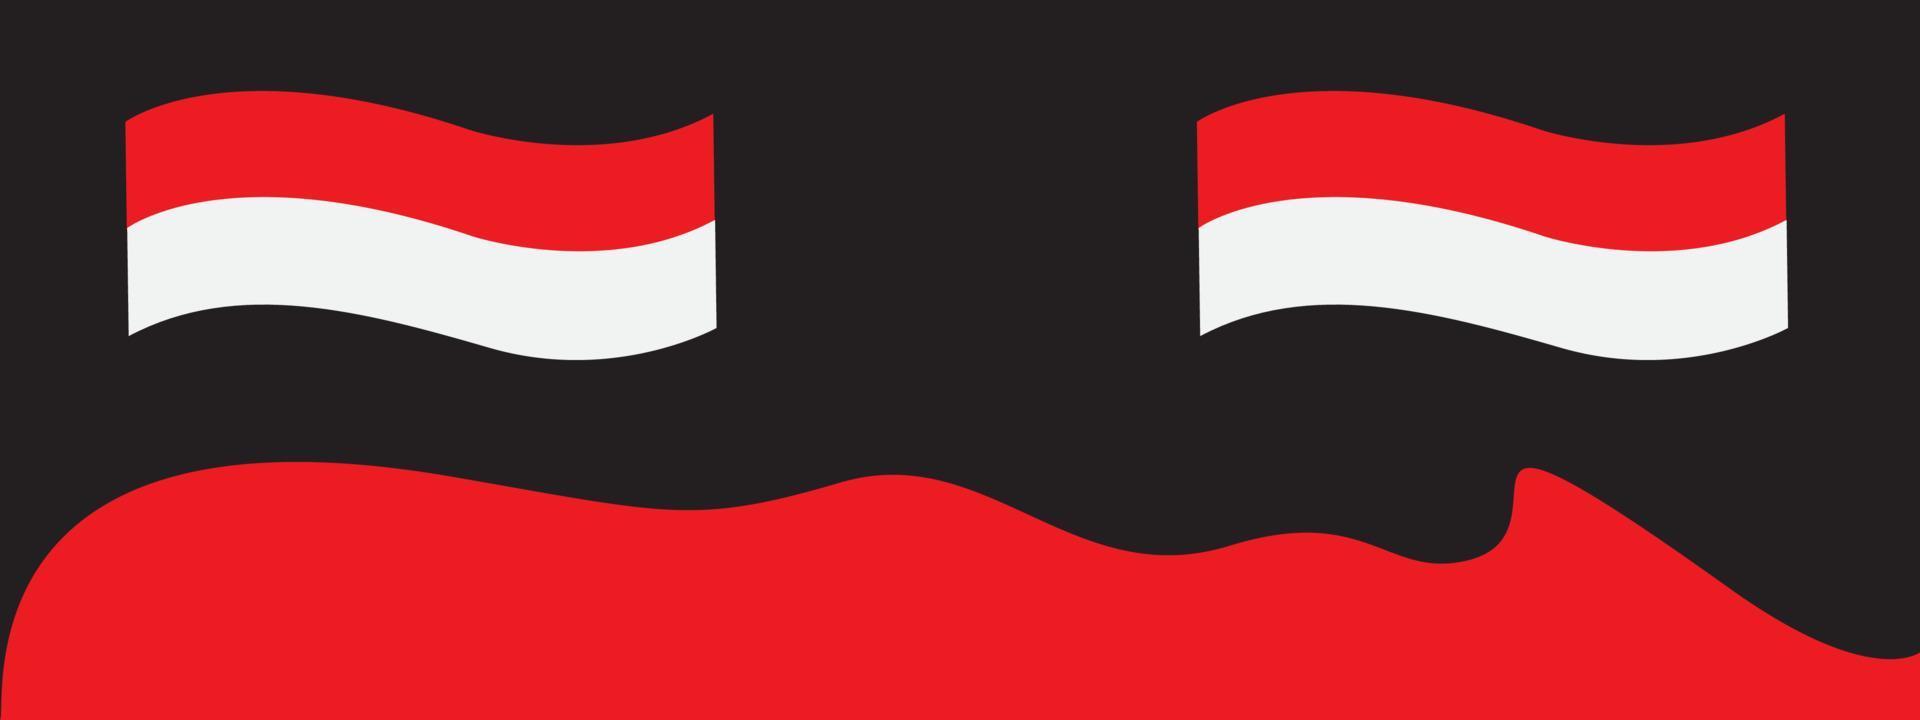 fond noir de l'indépendance indonésienne 17 août.pour illustration vectorielle. le drapeau rouge et blanc avec le numéro 77 comme signe ou symbole commémorant le jour de l'indépendance de l'indonésie. vecteur